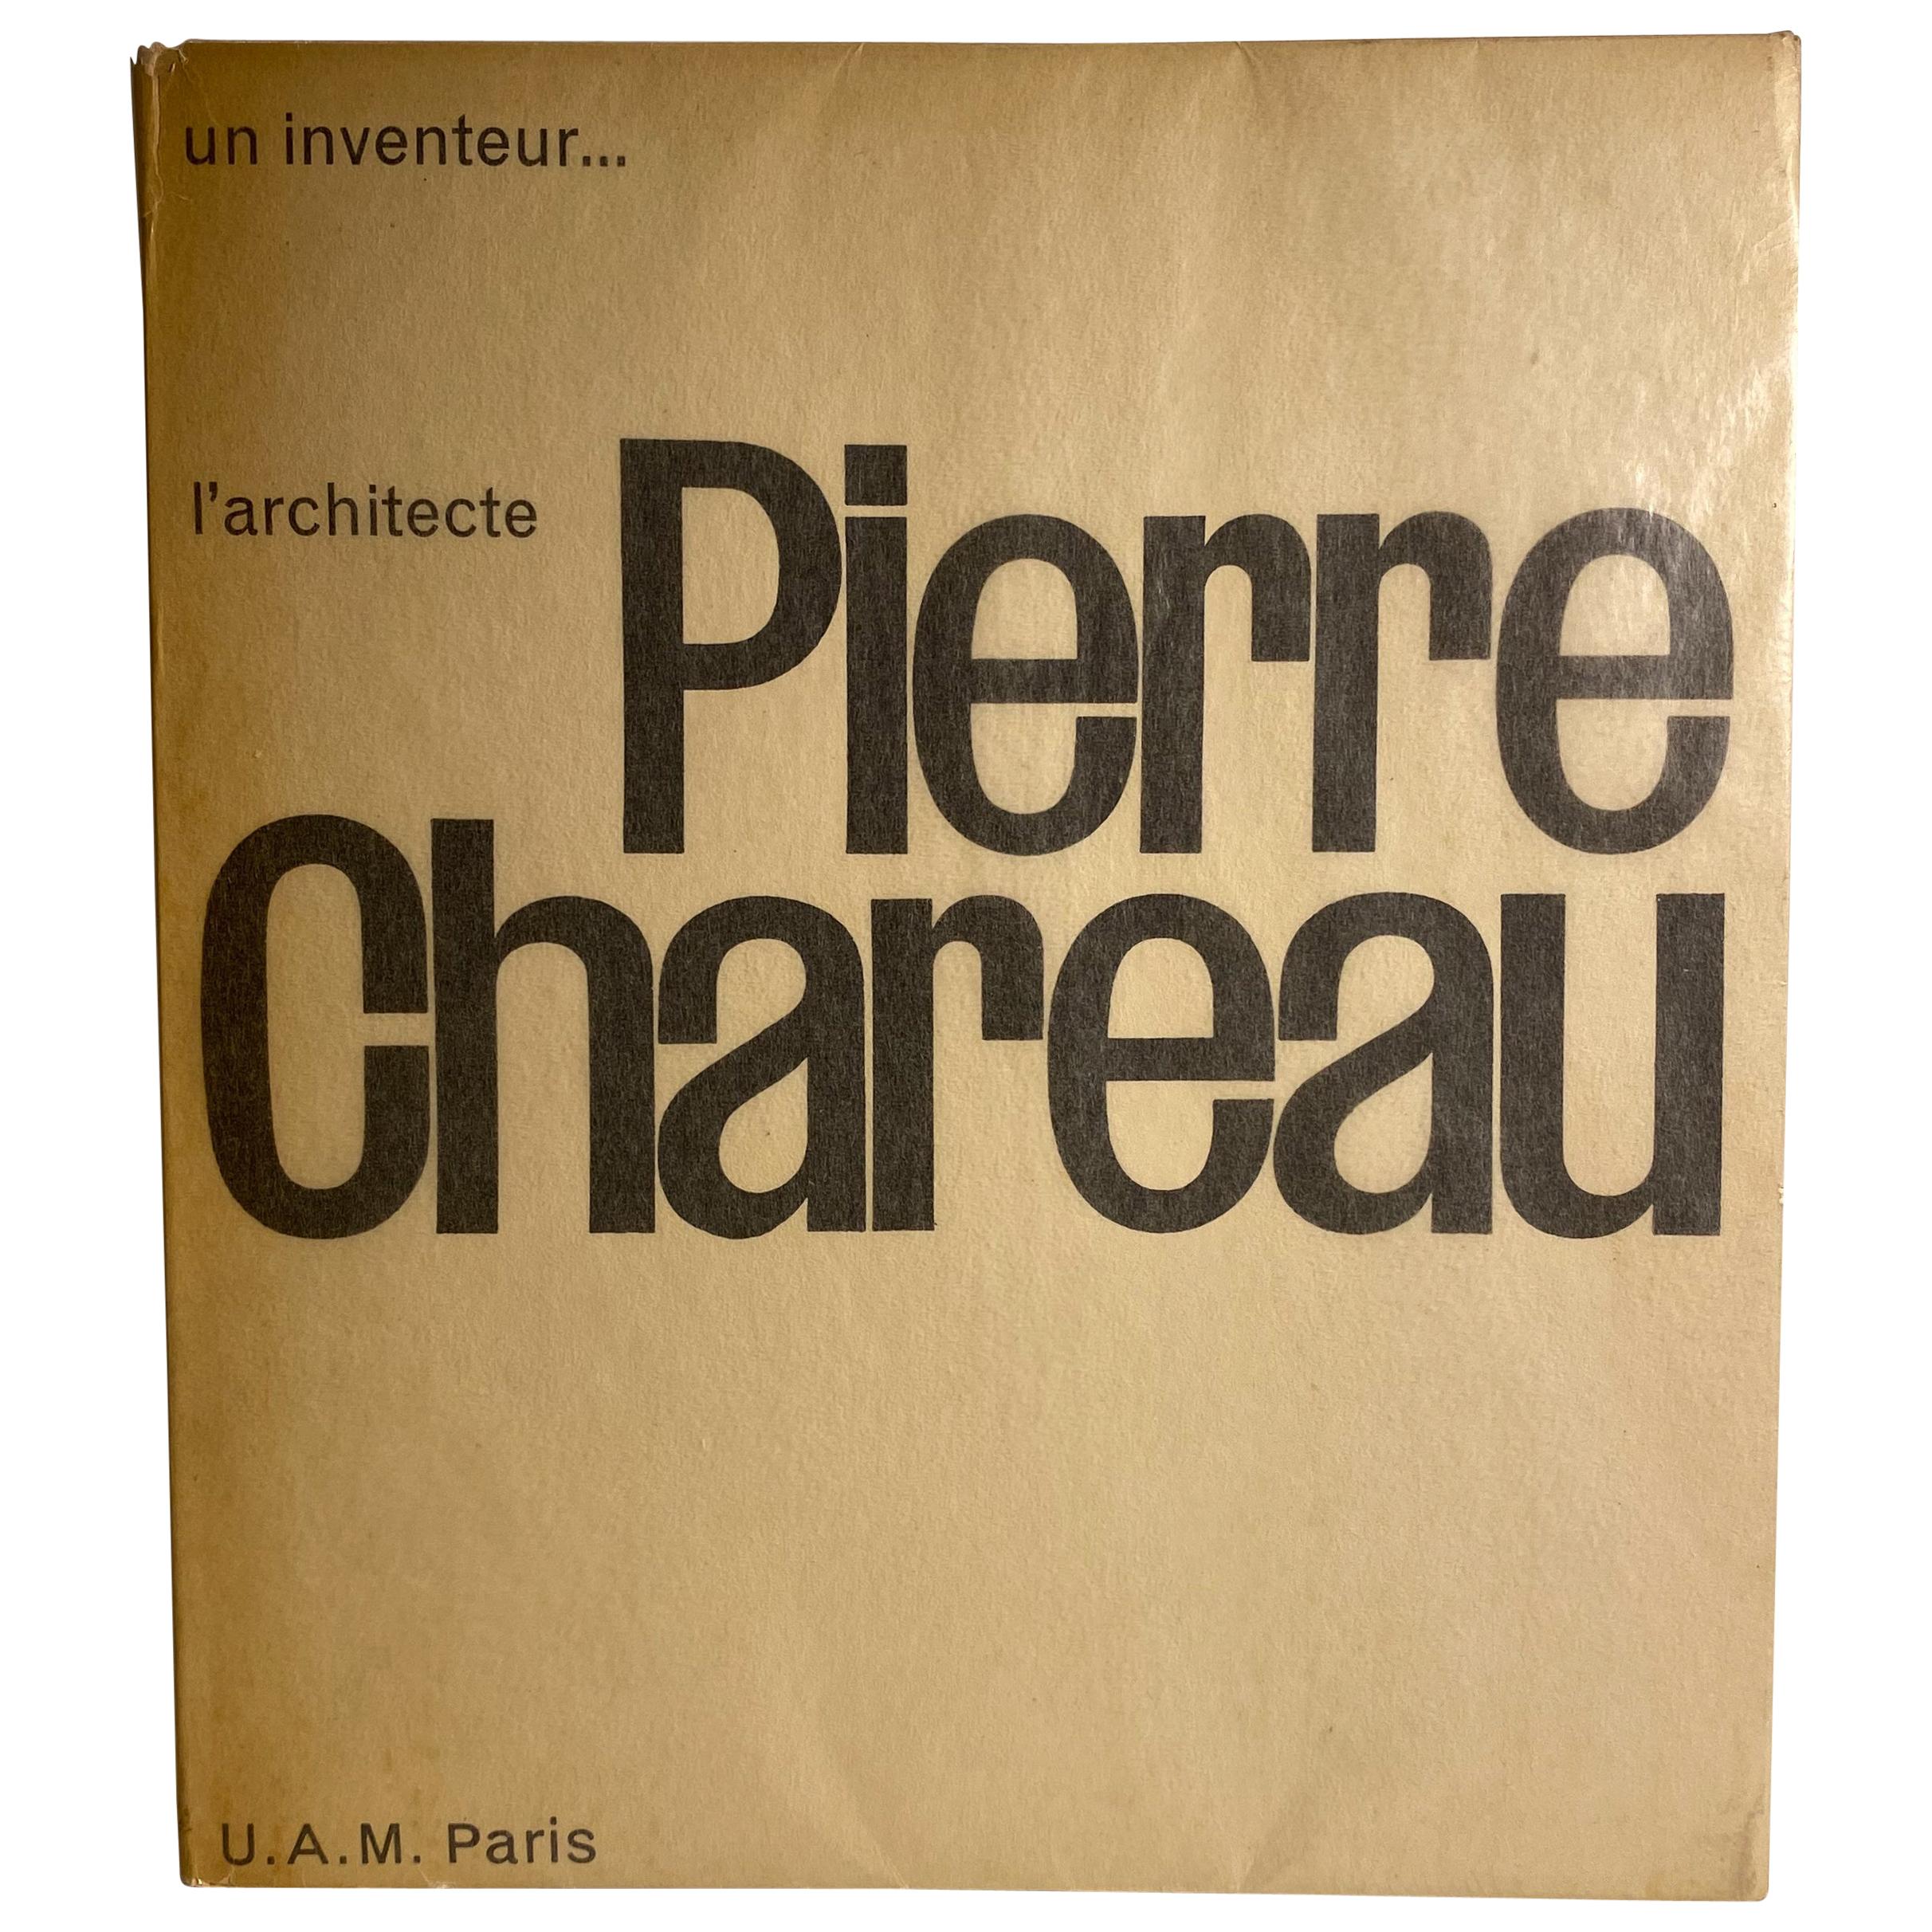 Pierre Chareau: Un Inventeur, l'architecte For Sale